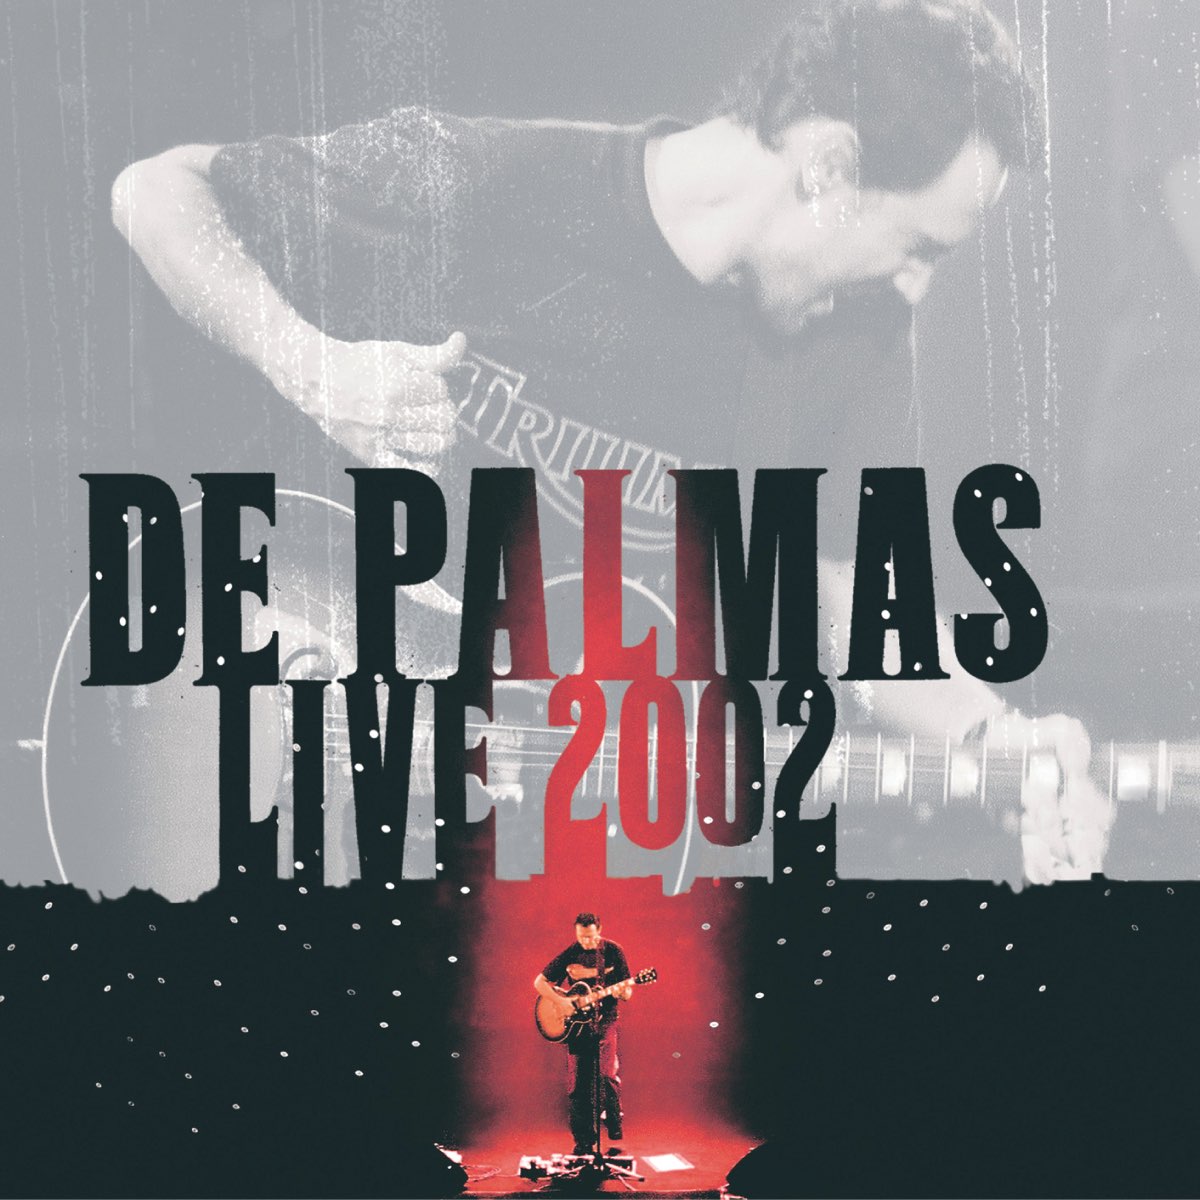 Gérald de Palmas Live 2002 (Live) – Album par De Palmas – Apple Music